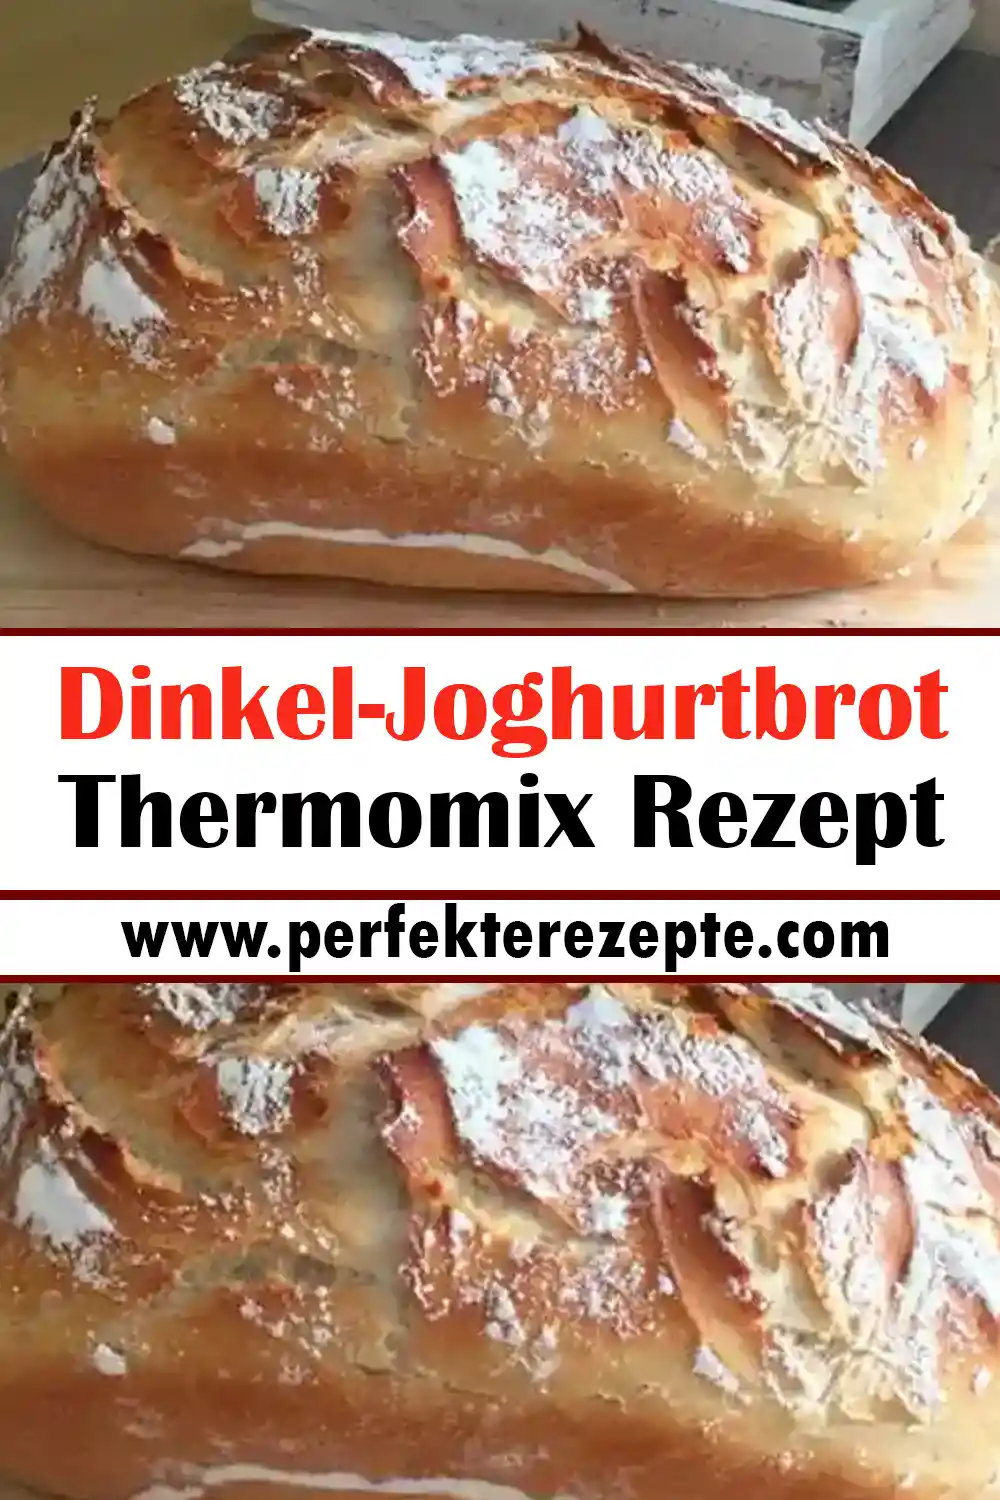 Dinkel-Joghurtbrot Thermomix Rezept